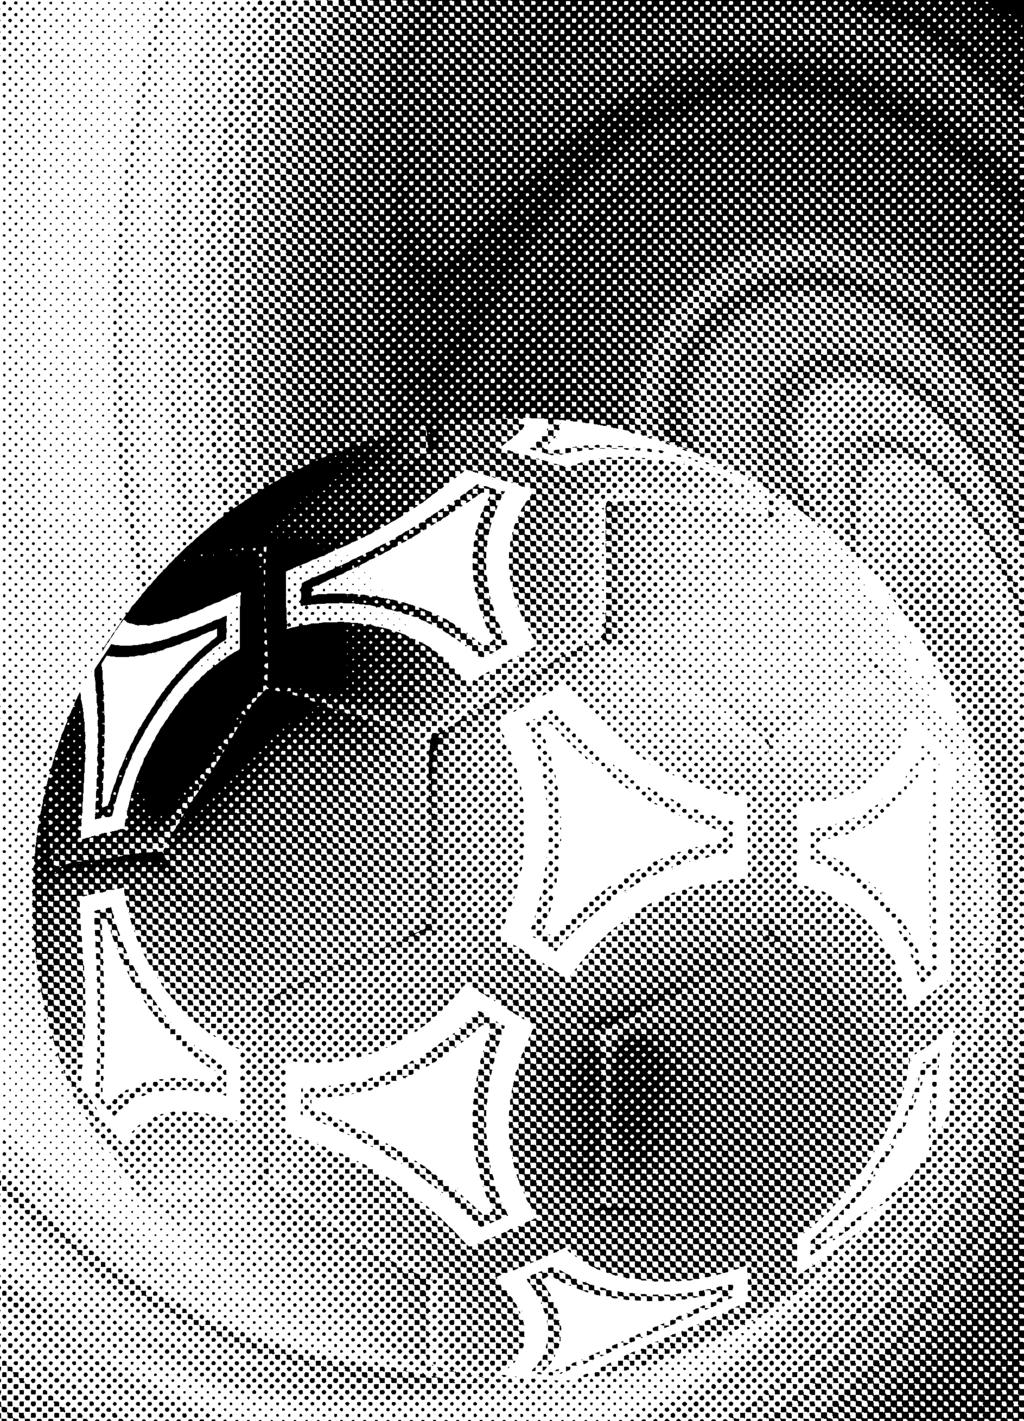 FK Austria Wien SK Rapid Wien Bisherige Bundesliga Duelle Spielort Heim 72 29 25 18 98:80 Auswärts 73 23 24 26 93:104 Neutral 2 2 0 0 6:1 Gesamt 147 54 49 44 197:185 Die letzten 10